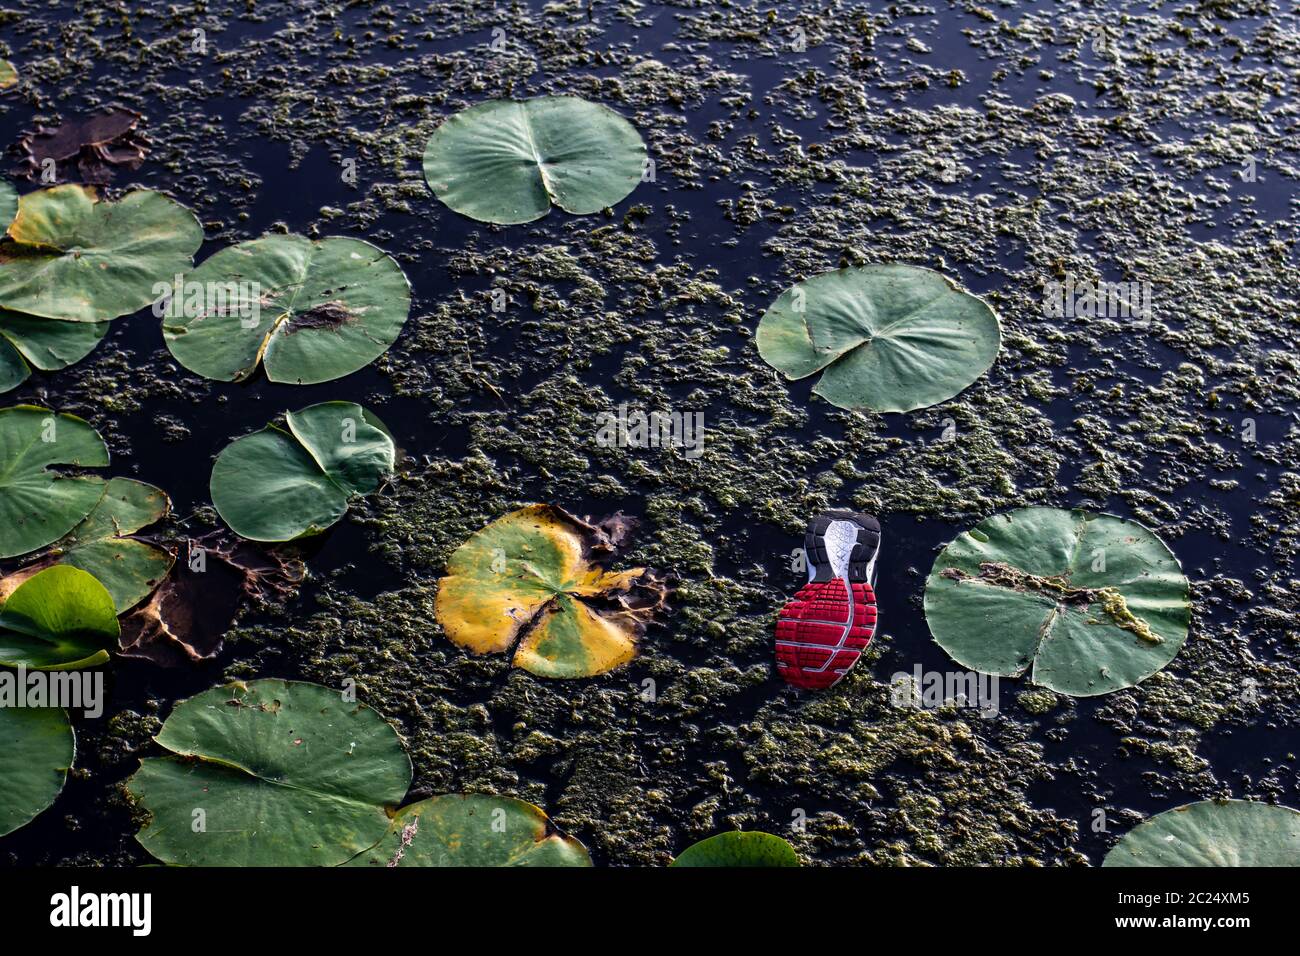 Calzado abandonado flotando con almohadillas lilly en el agua Foto de stock